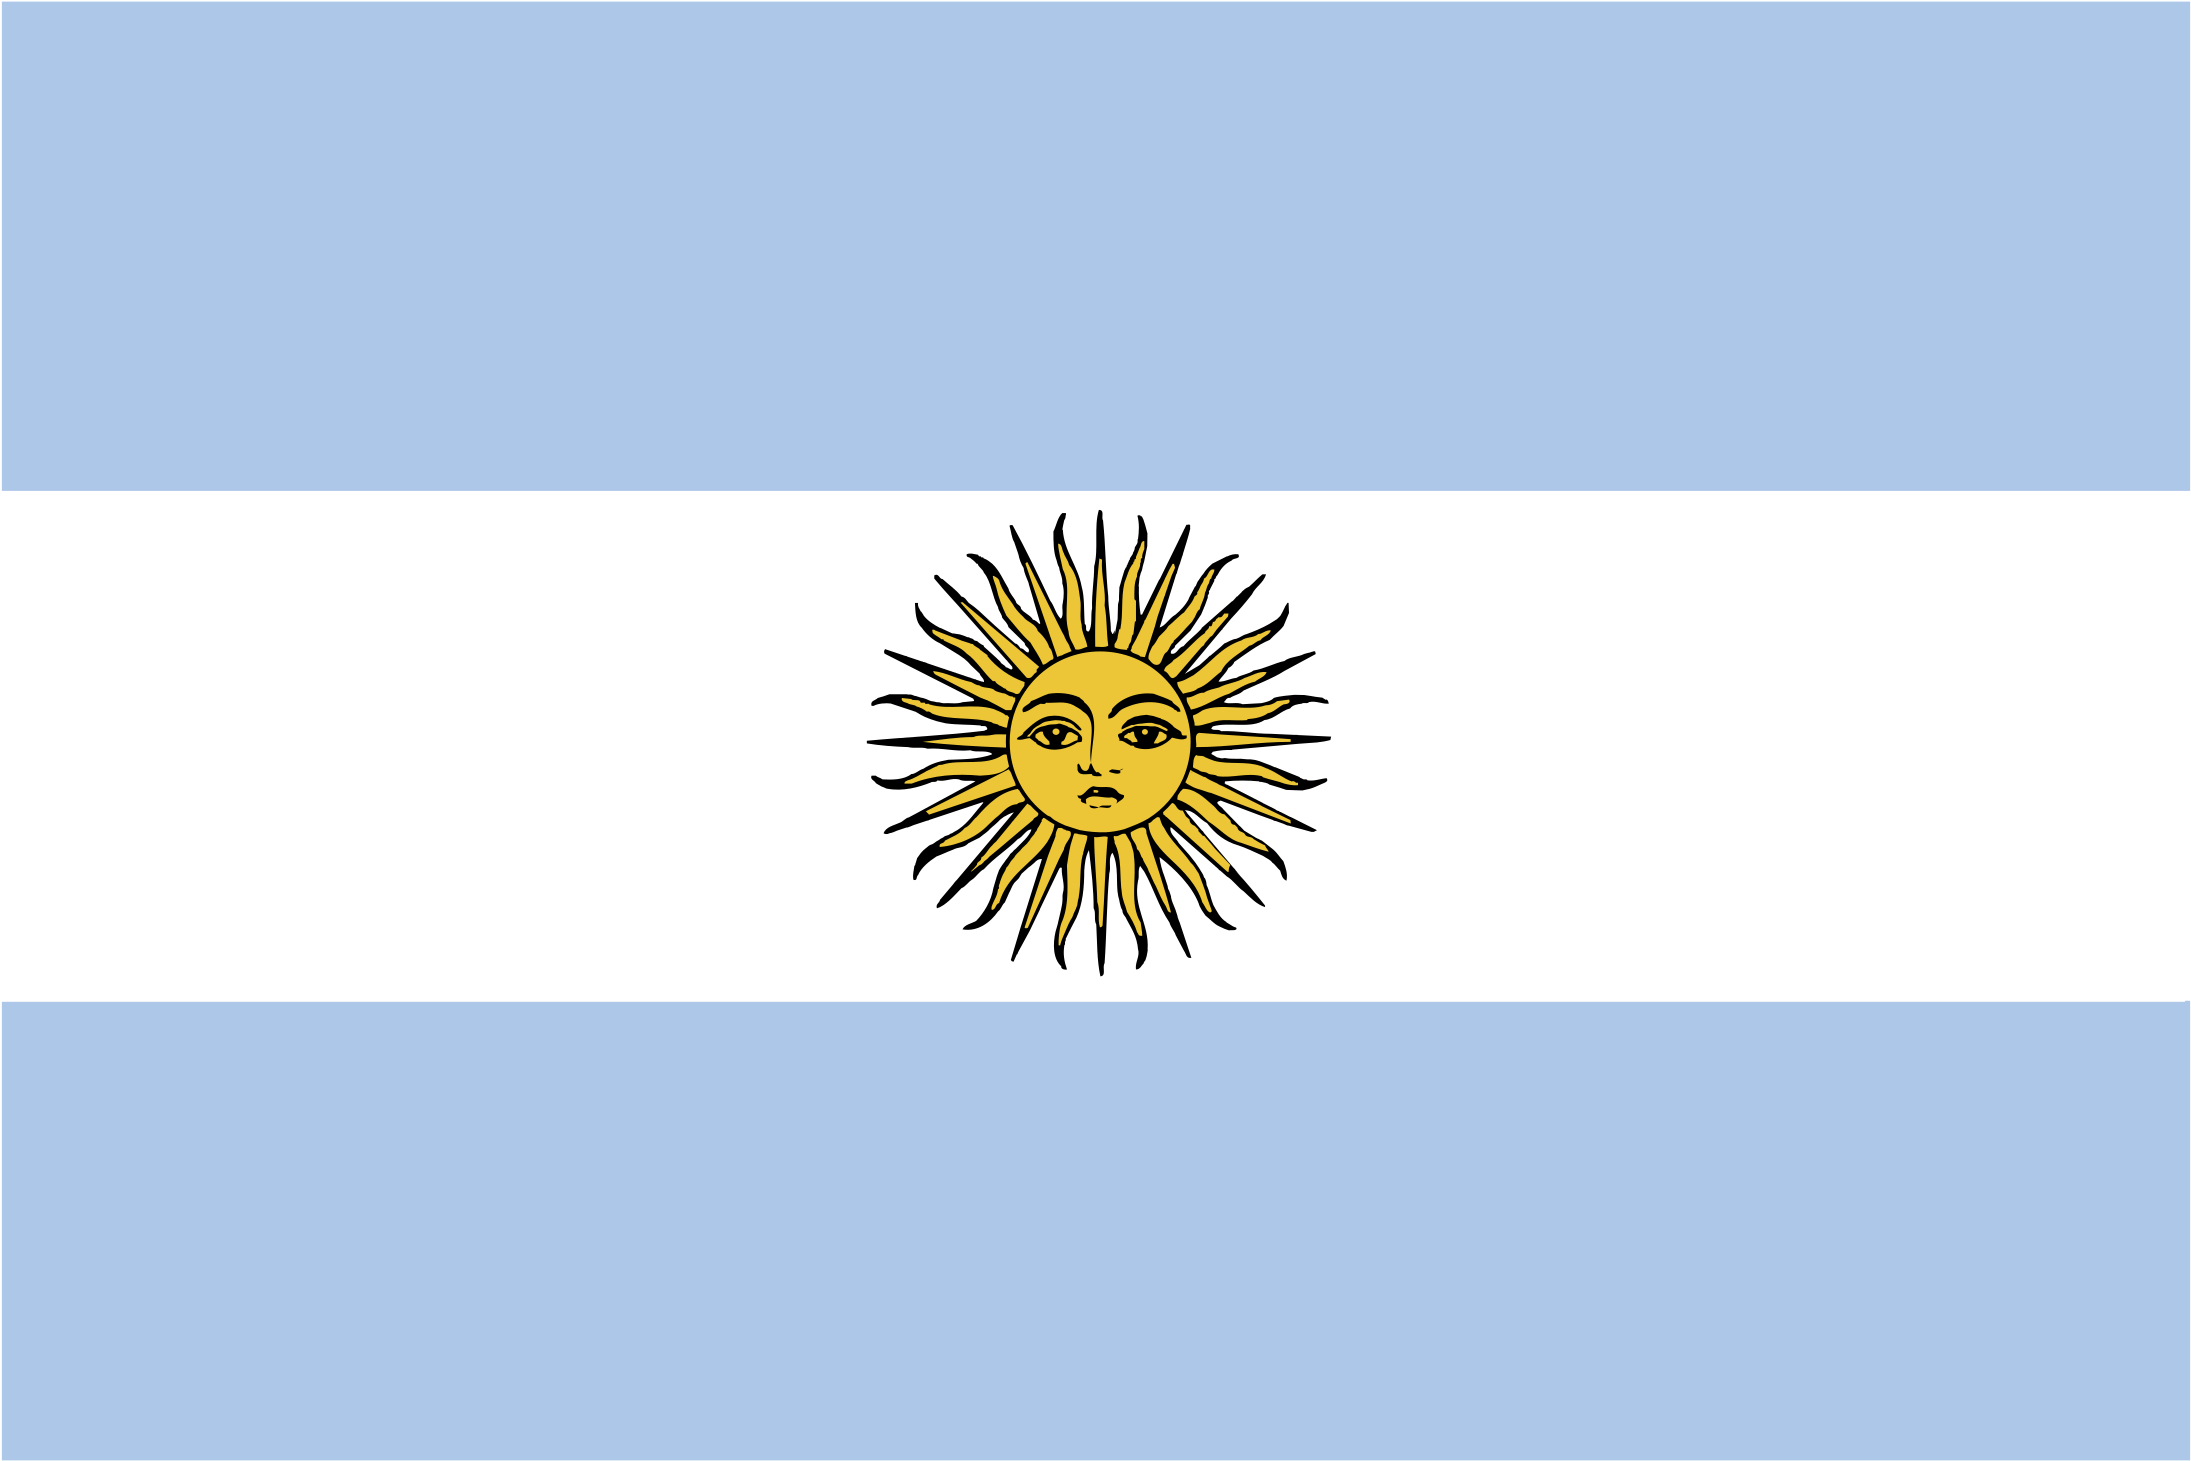 Флаг аргентины картинки